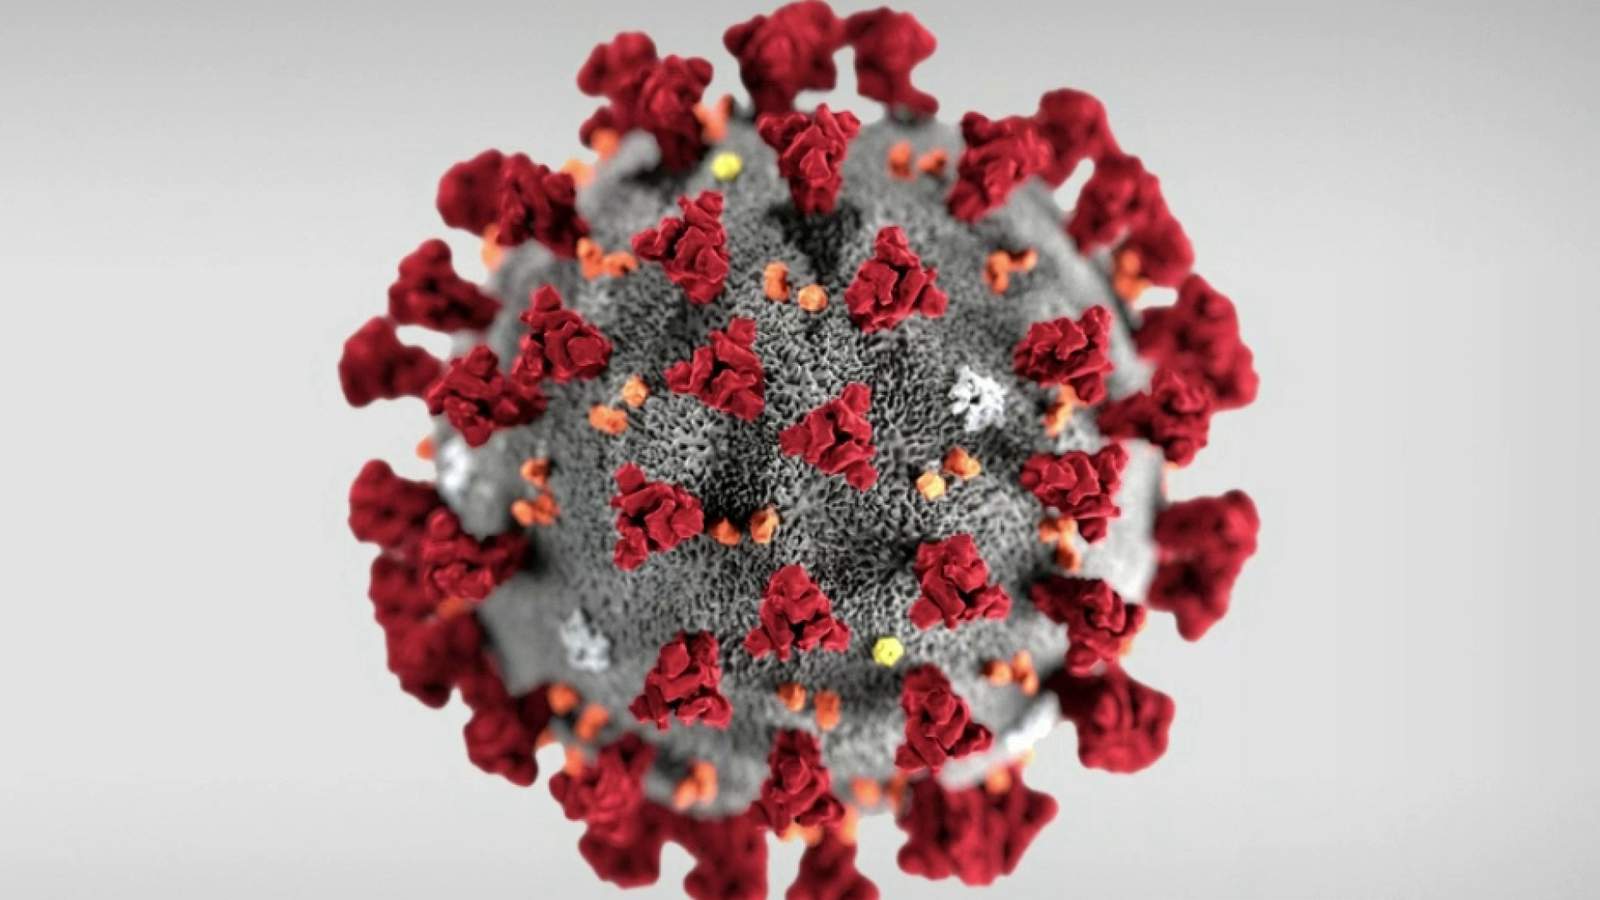 Galax, Washington County reporting new coronavirus cases